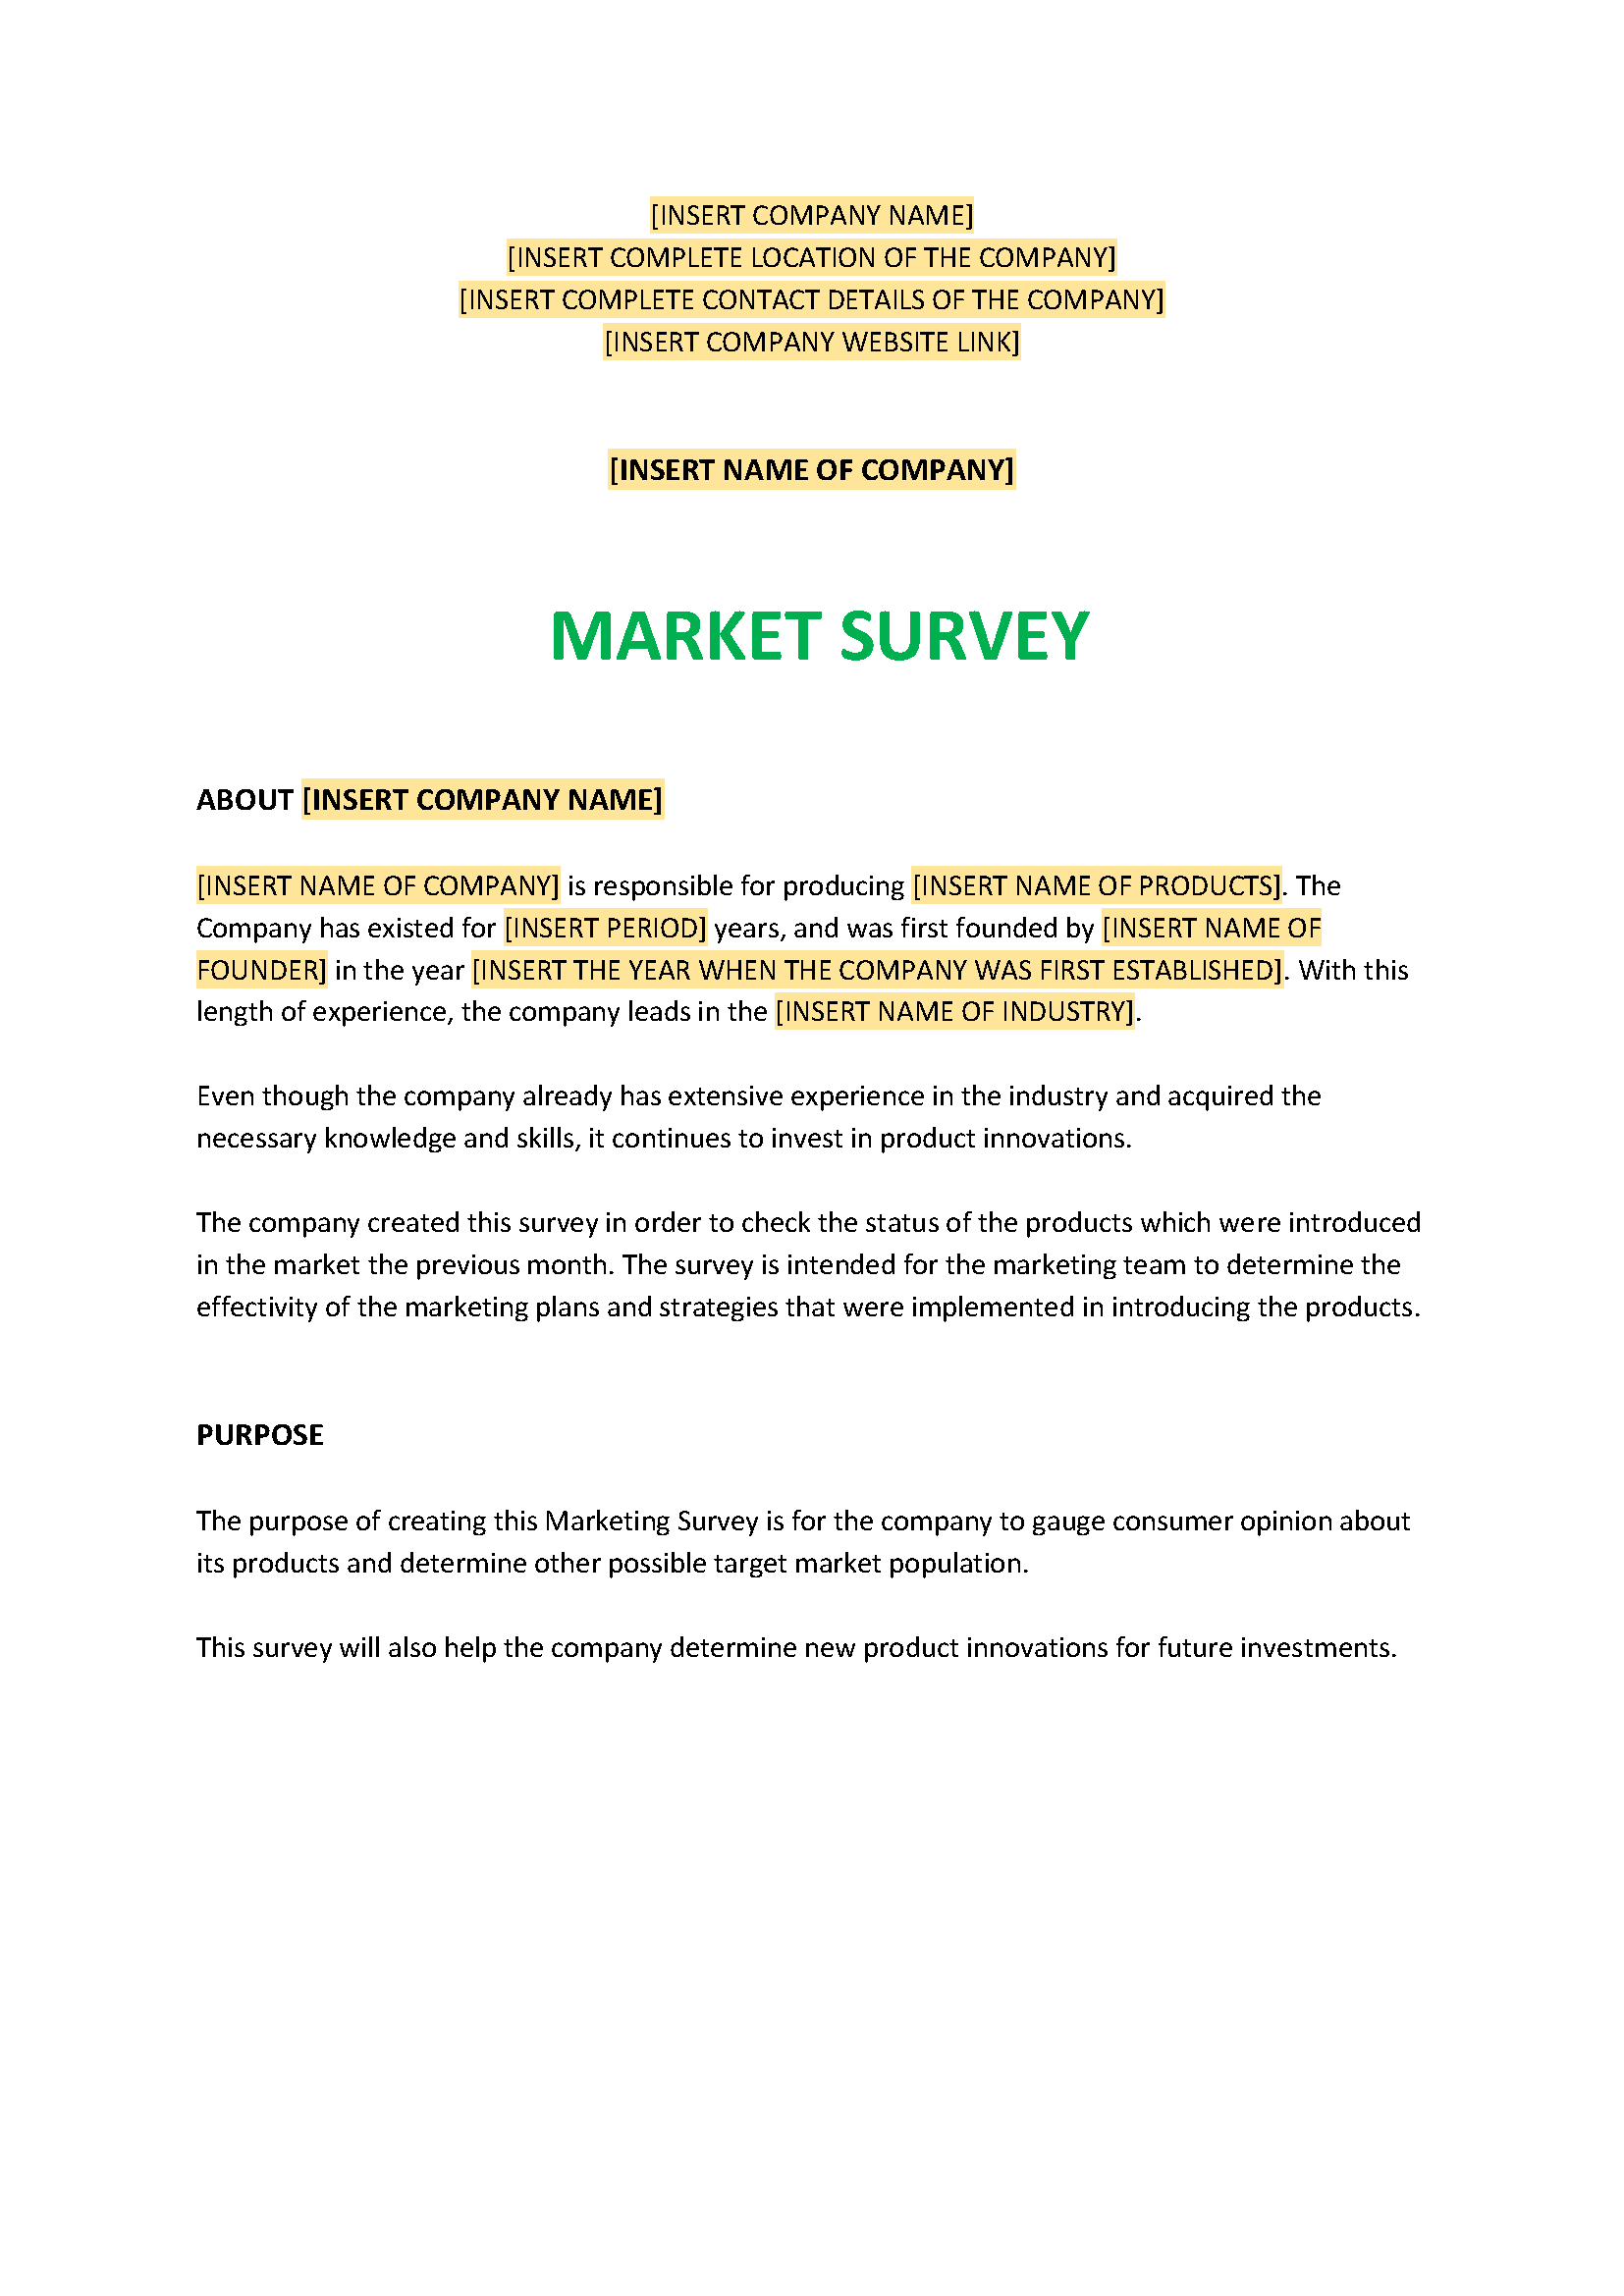 Market Survey Template